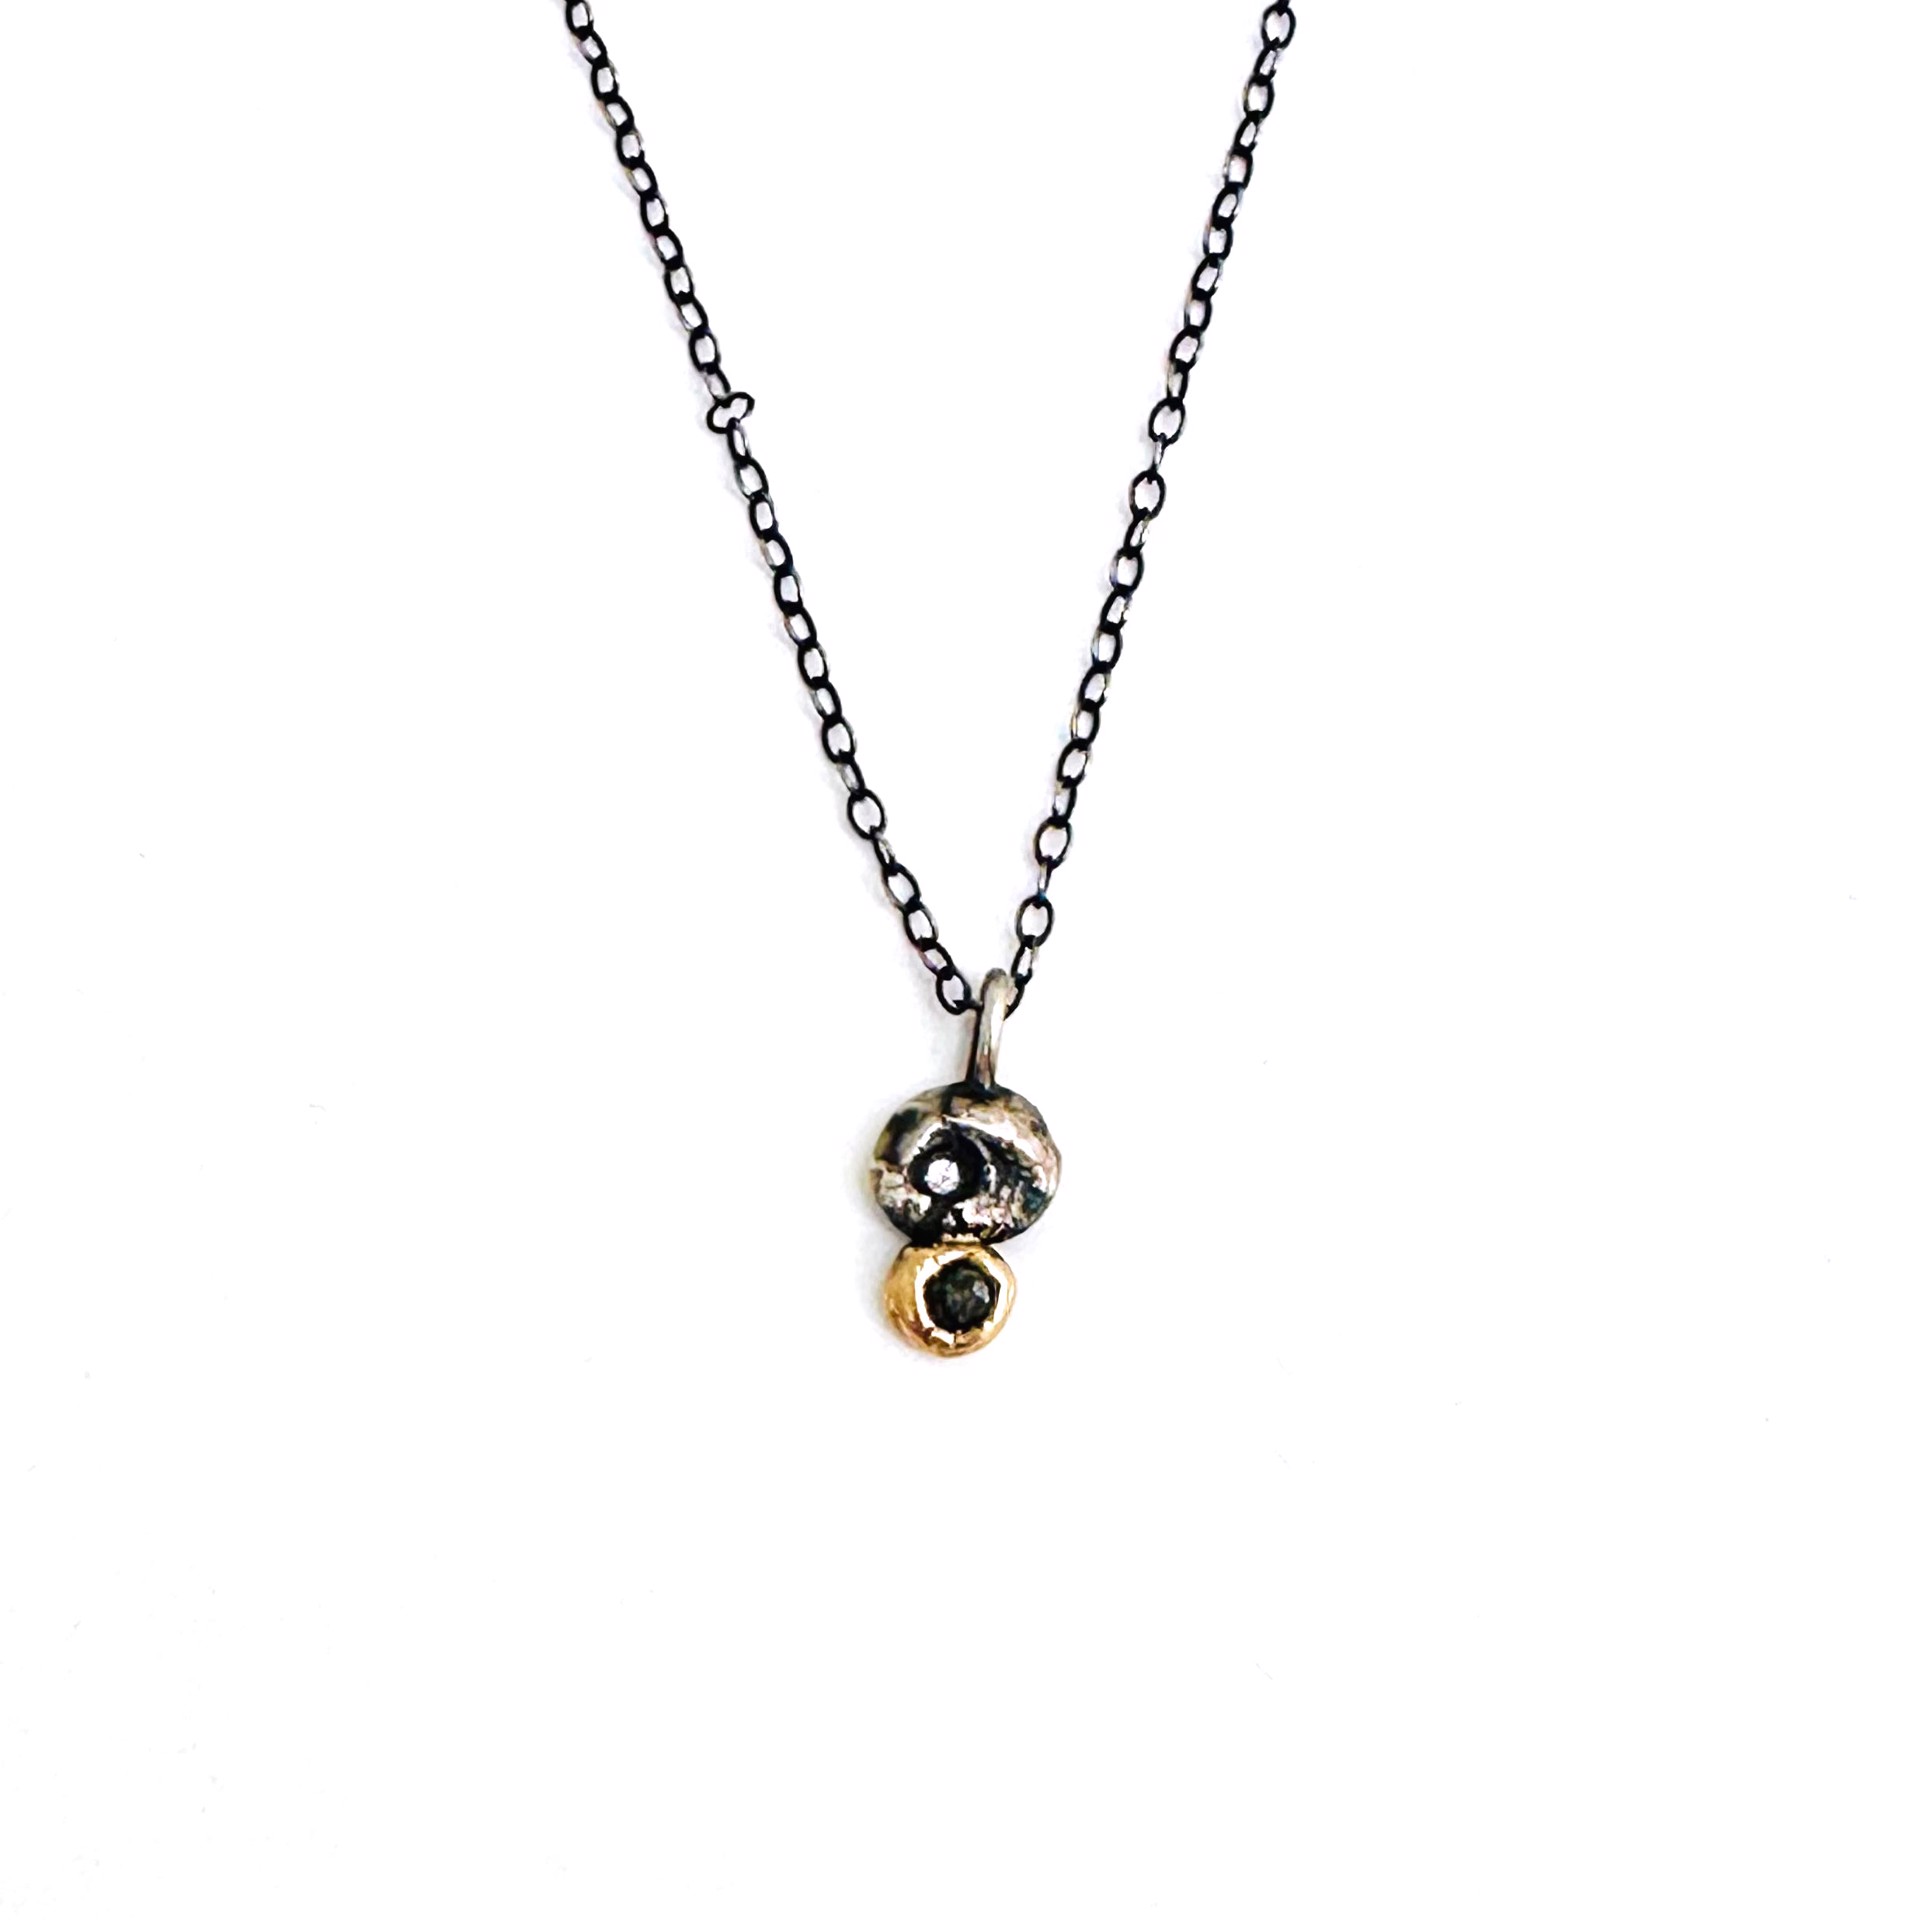 Molten Diamond Necklace by Zanny Cox